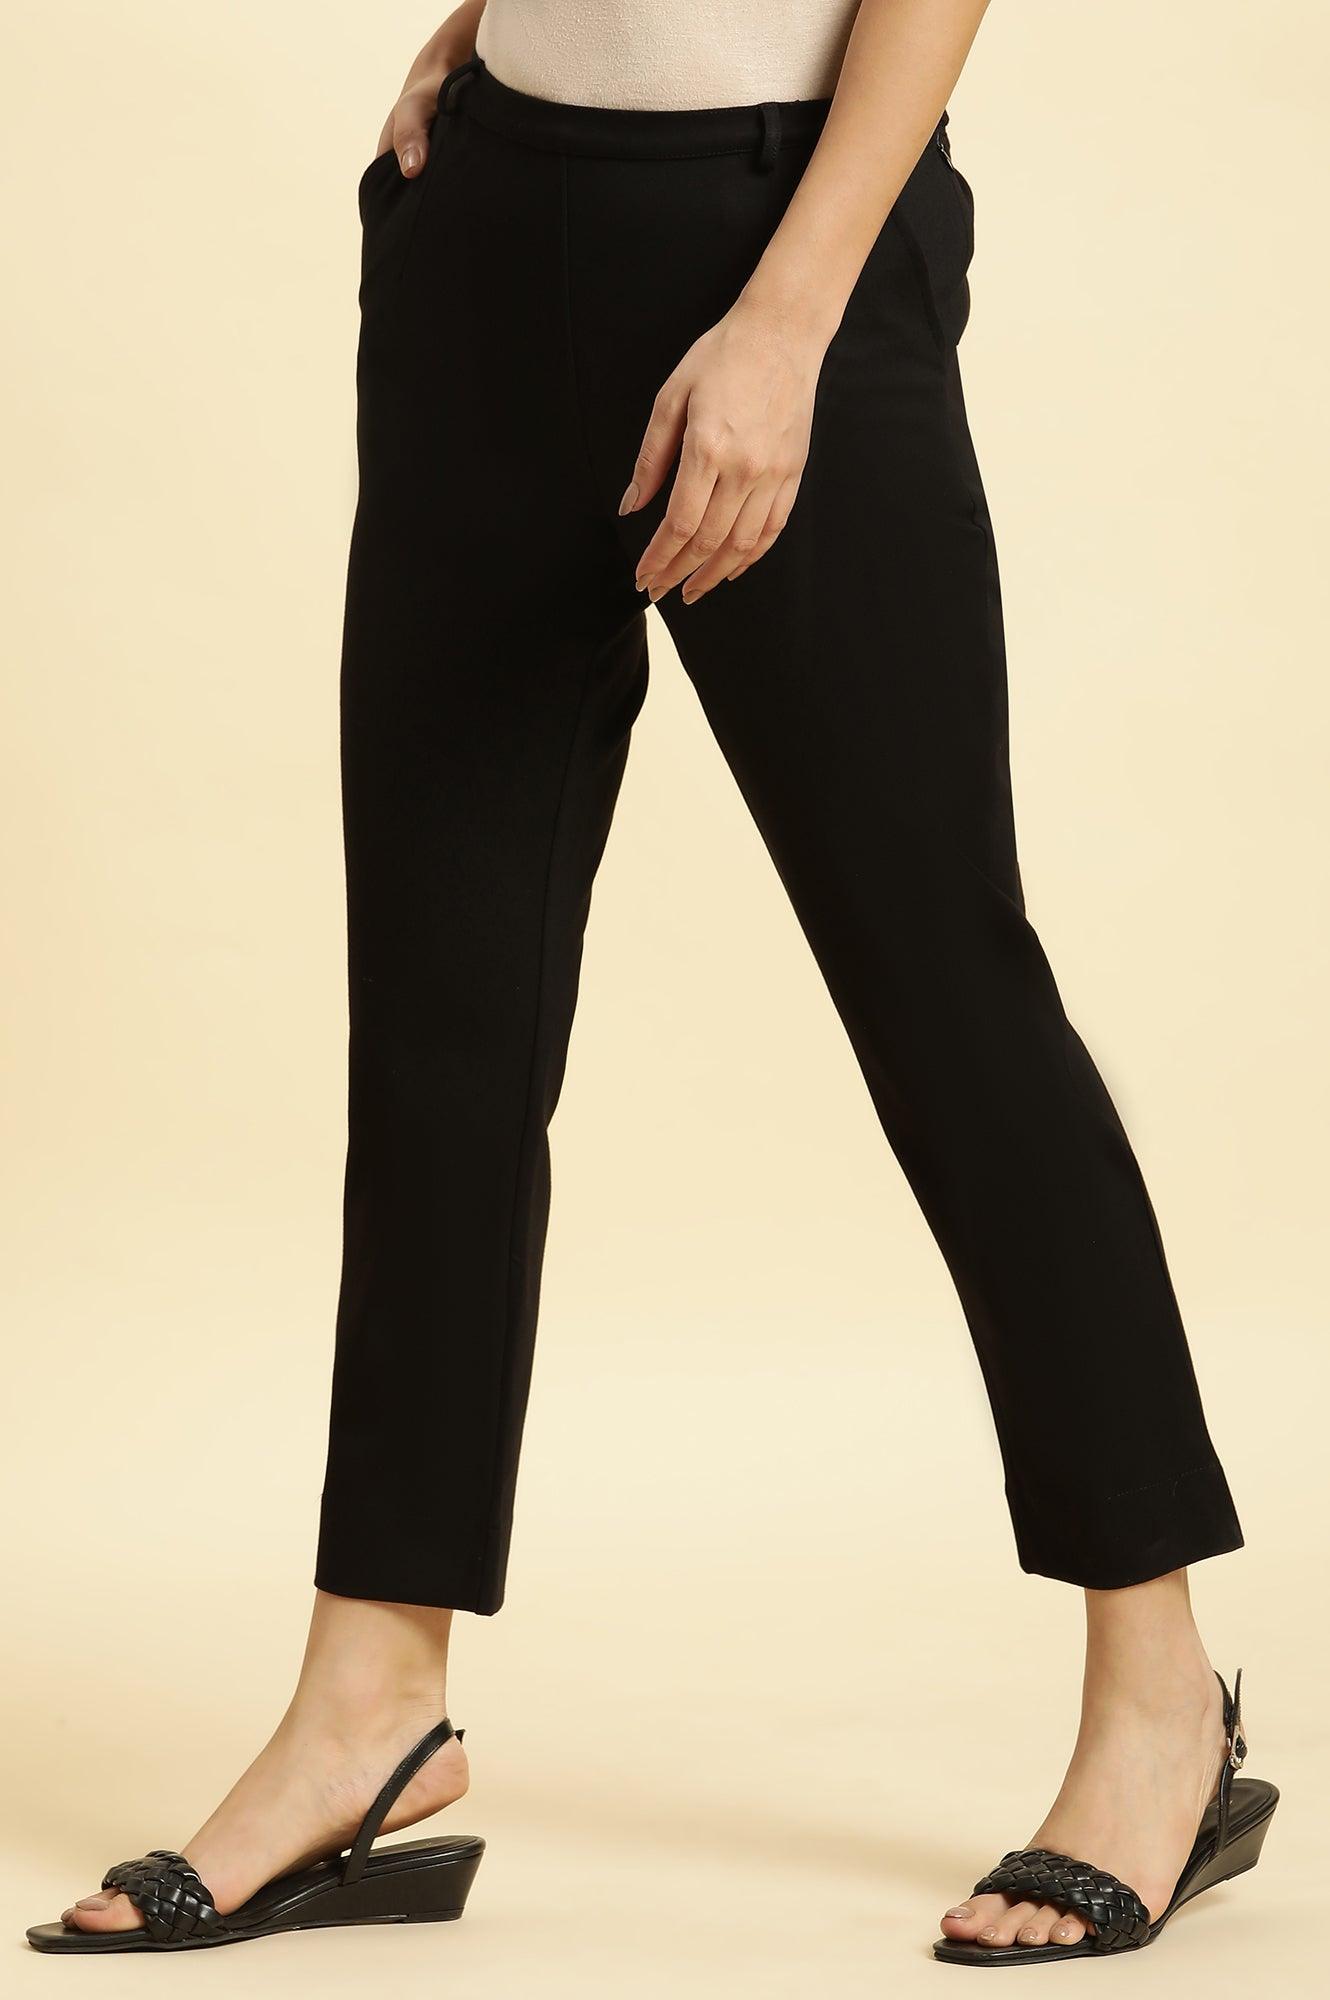 Black Slim Fit Elasticated Western Pants - wforwoman